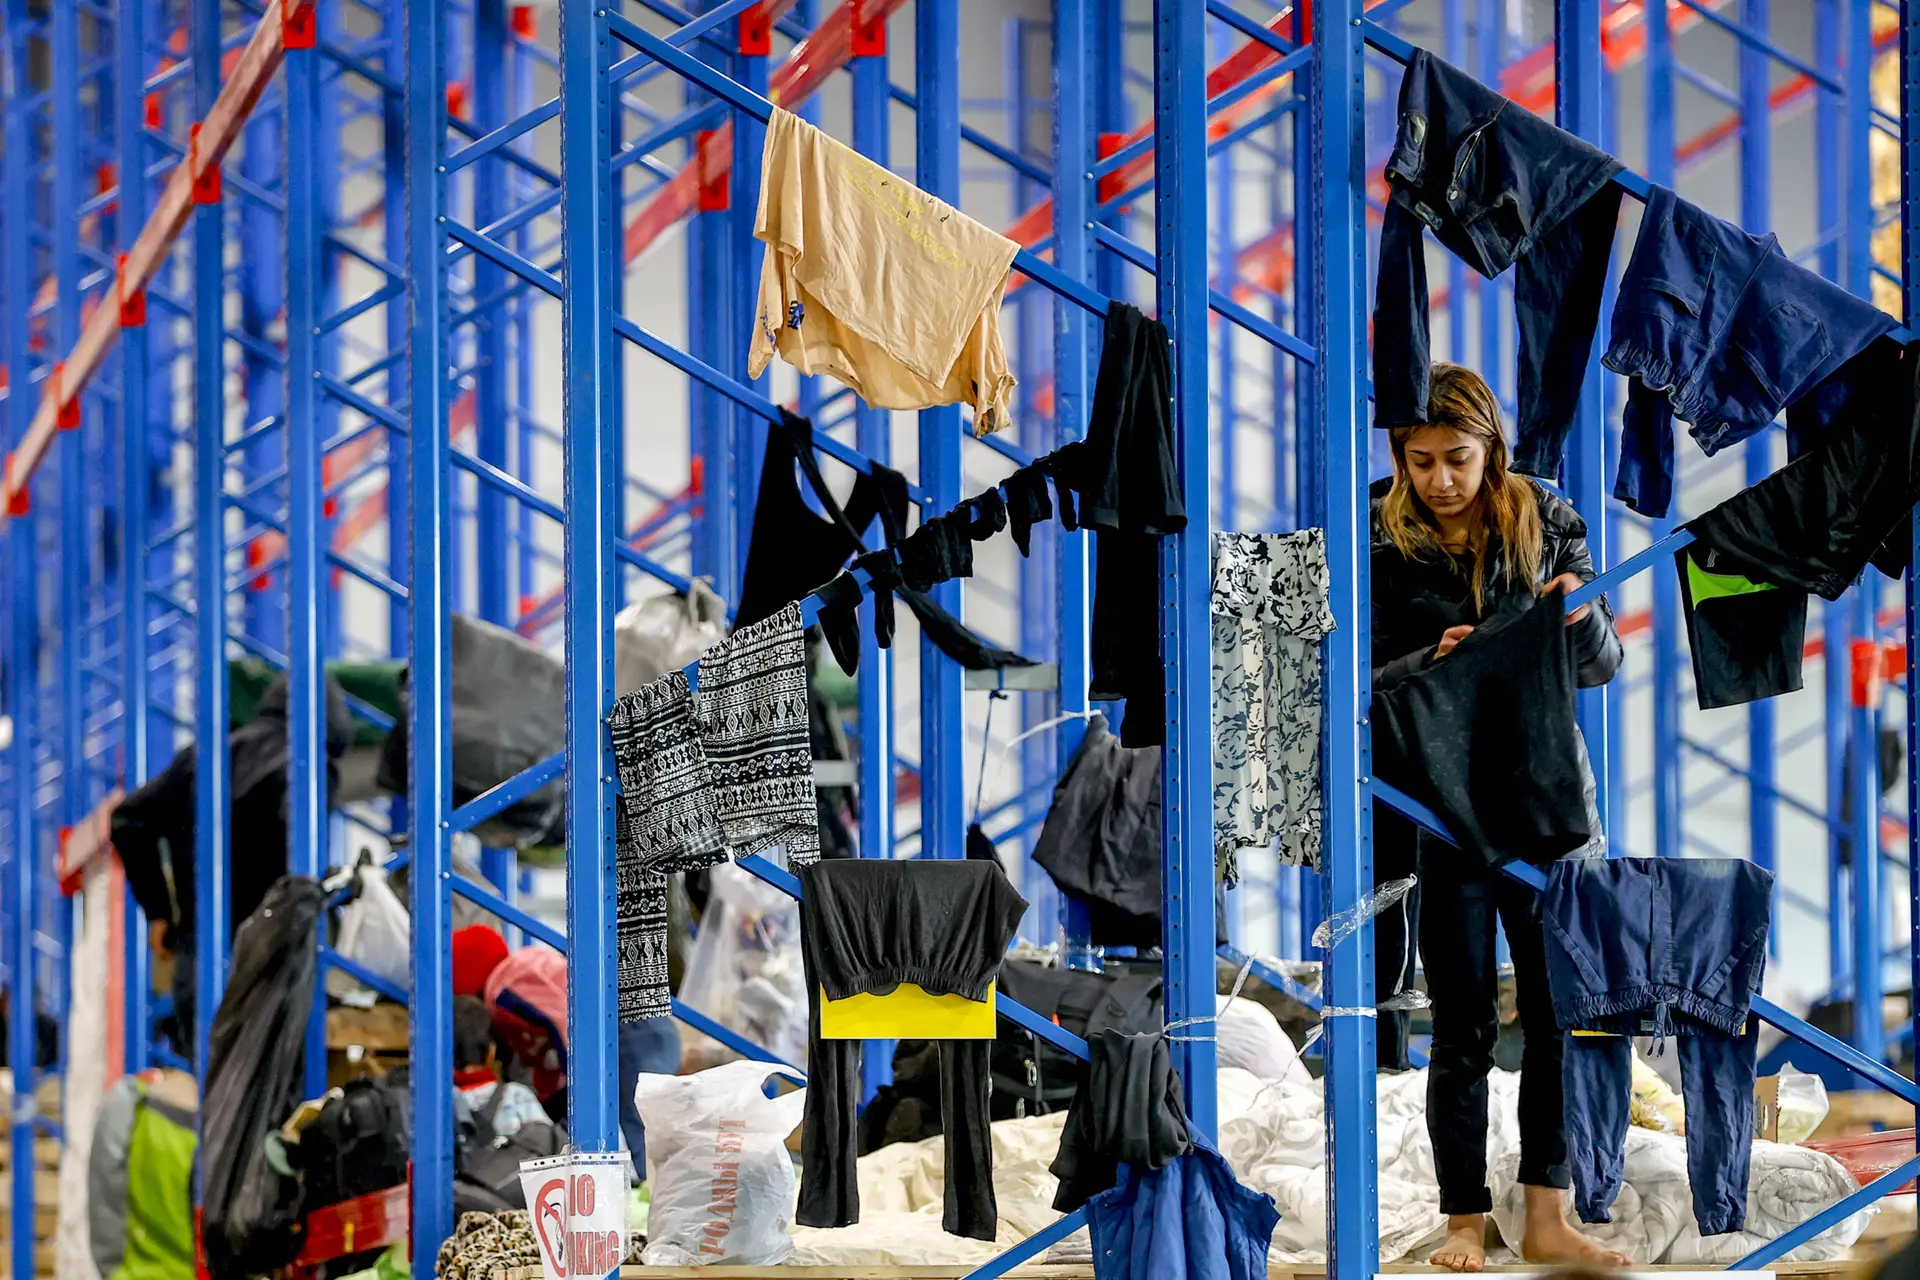 Uma migrante trata da roupa, num centro de acolhimento disponibilizado pelo Governo da Bielorrússia, próximo da fronteira com a Polónia FOTO: Sefa Karacan / Anadolu Agency / Getty Images